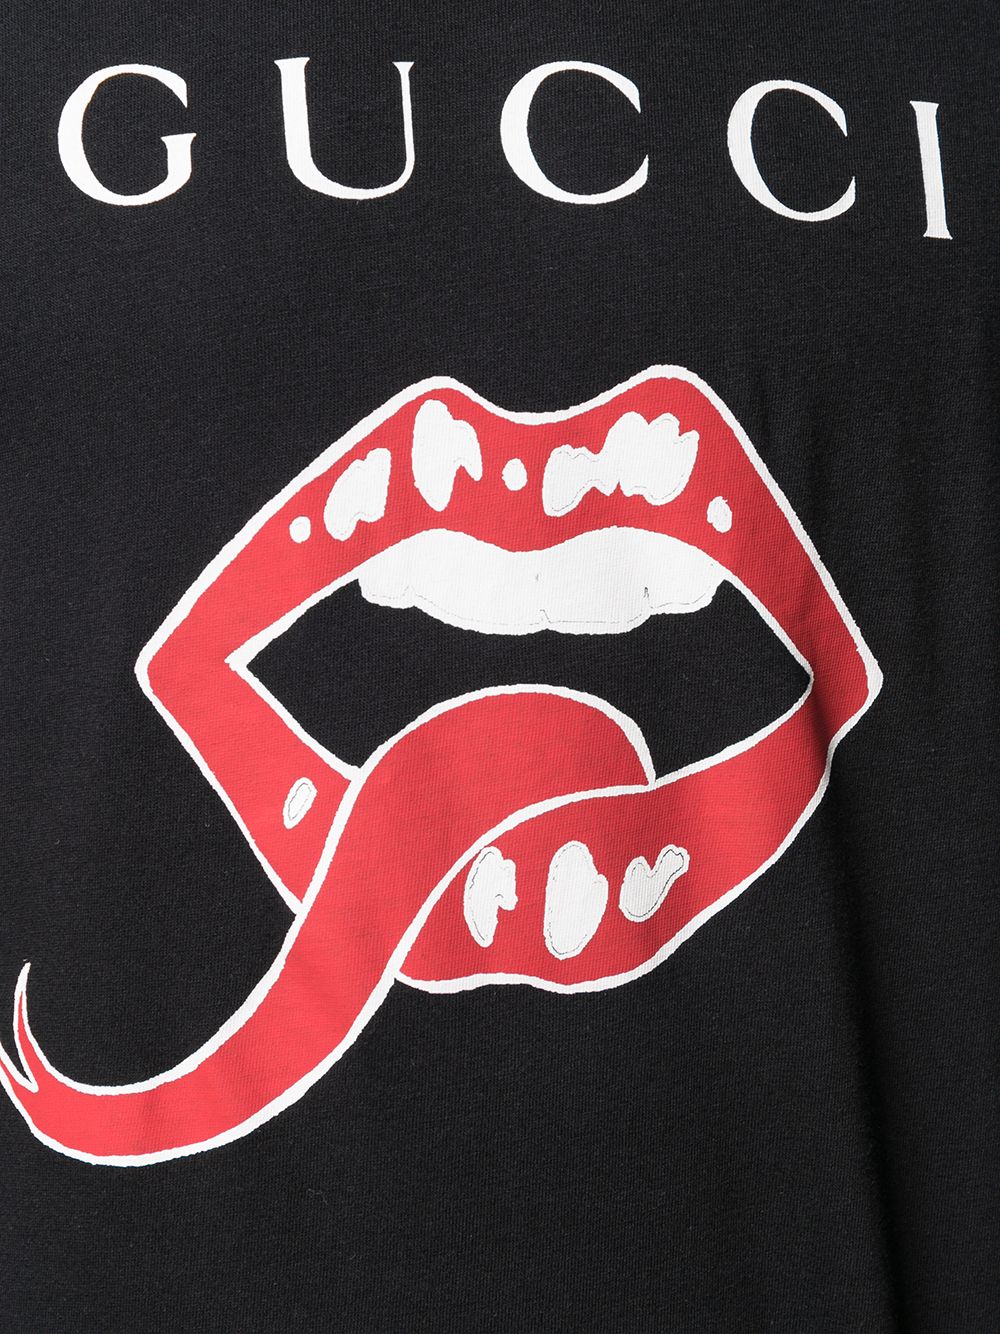 gucci tongue t shirt